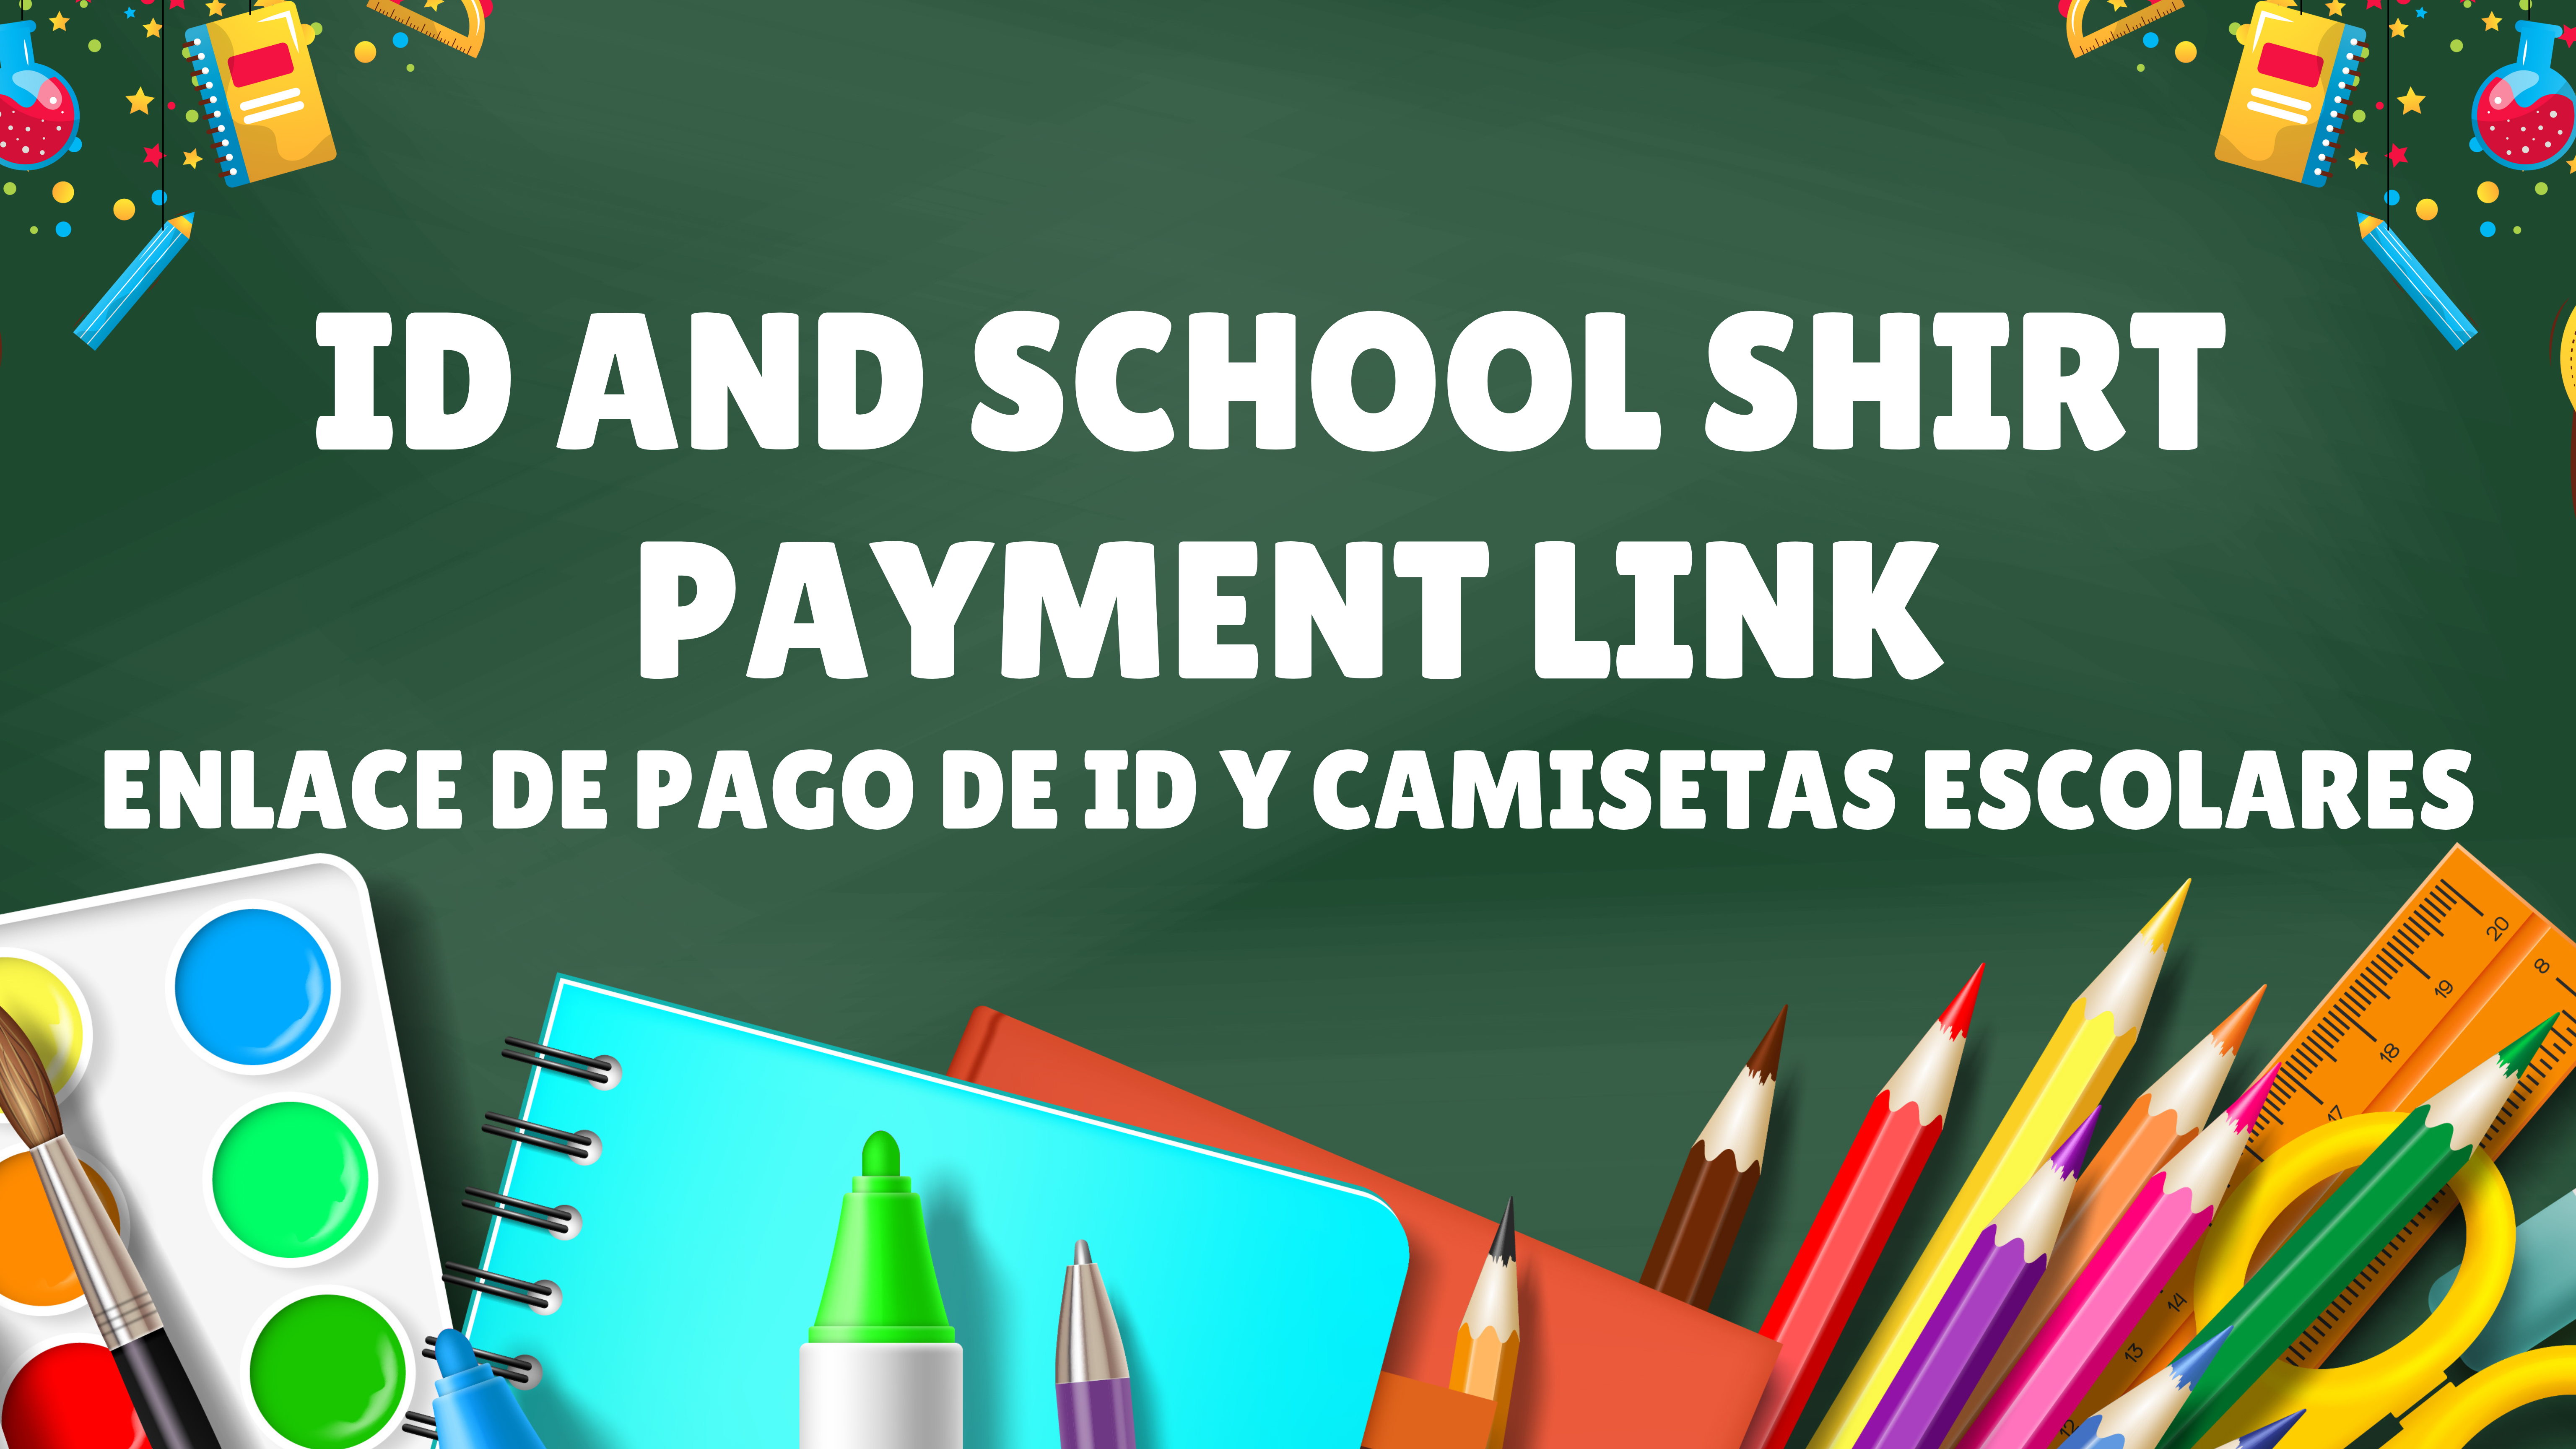 D and School Shirt  Payment Link enlace de pago De ID y camisetas Escolares